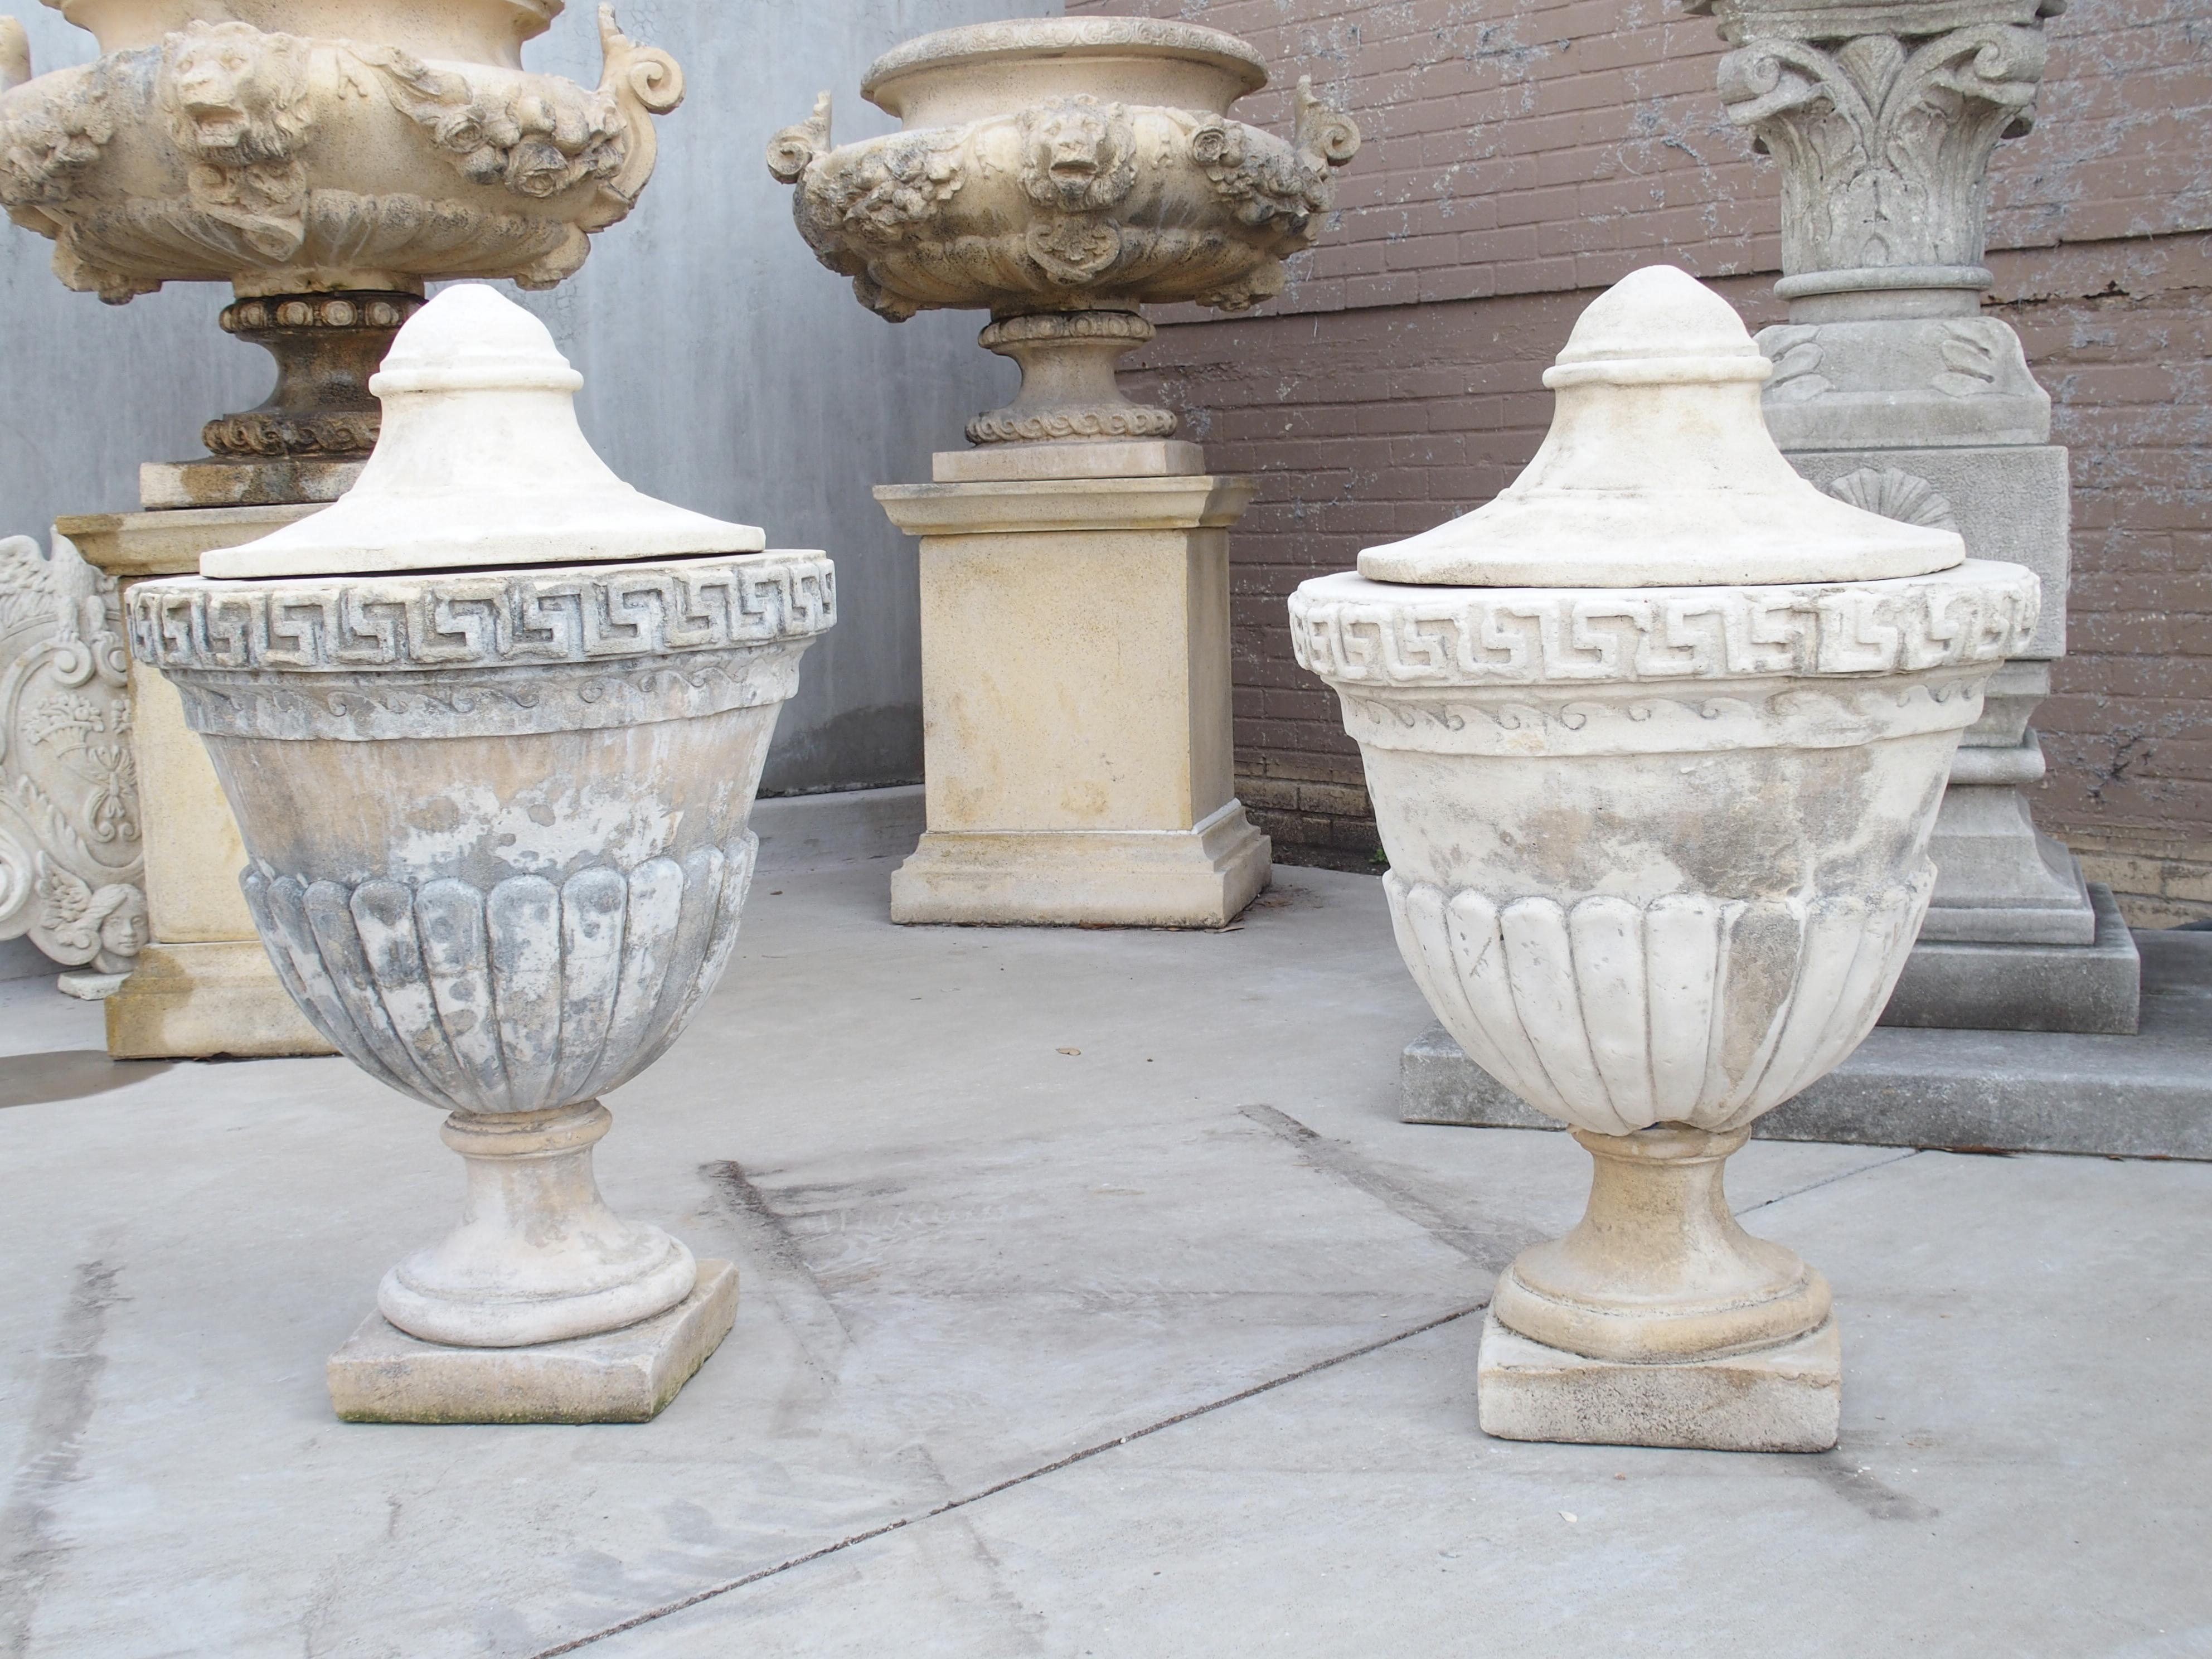 Moulée à la main par des artisans qualifiés du sud de l'Italie, cette paire d'urnes à couvercle en pierre calcaire est de style néoclassique. Chaque urne est un témoignage de l'art du moulage à la main, évitant les moules pour un caractère vraiment